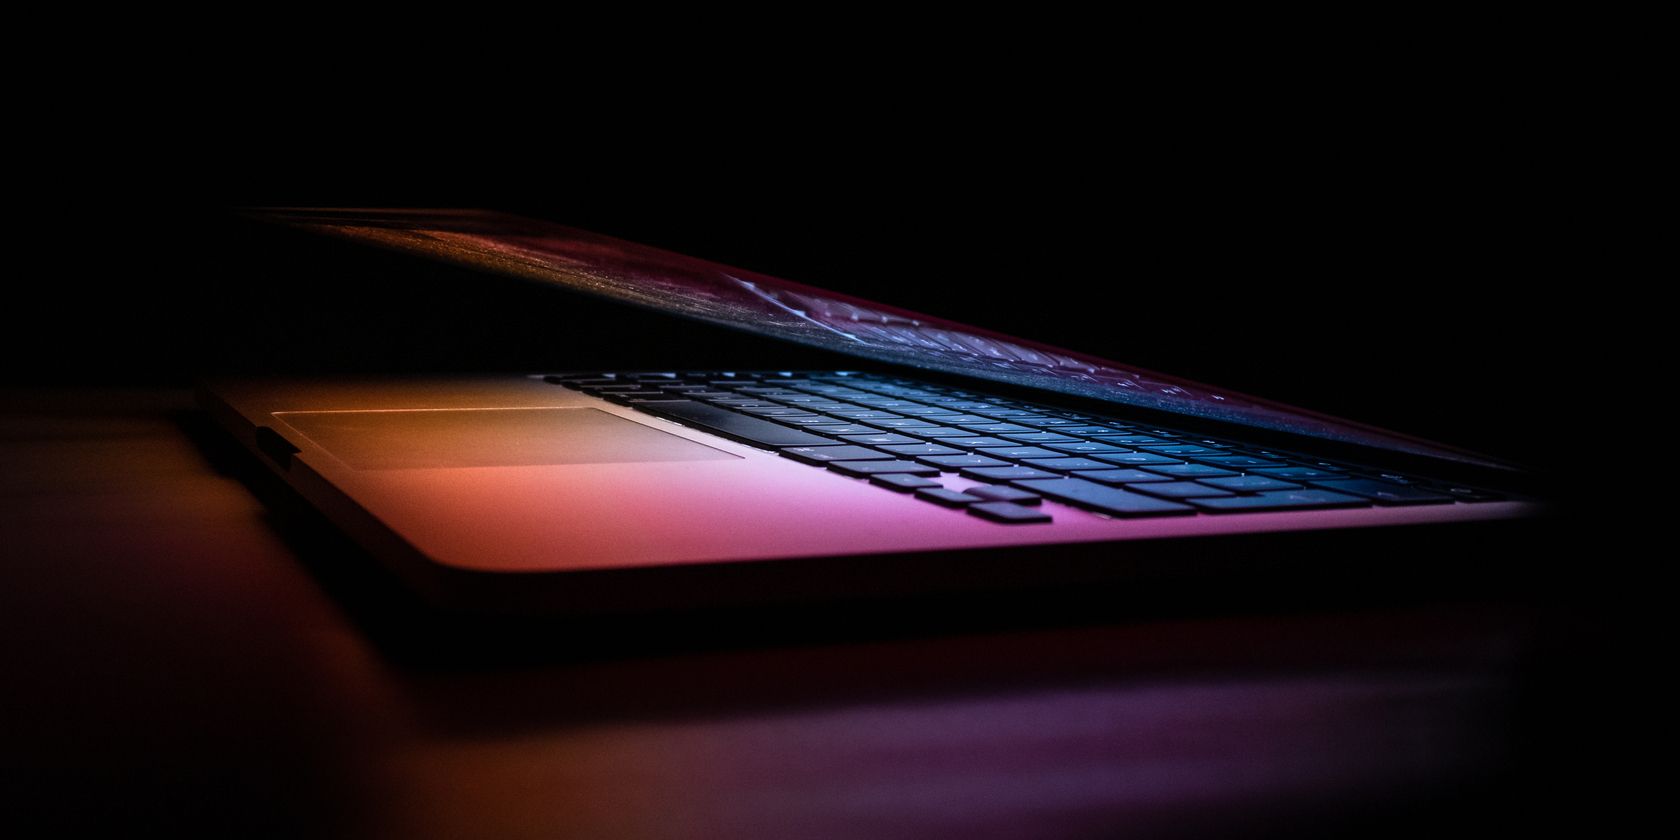 An almost-shut laptop in the dark